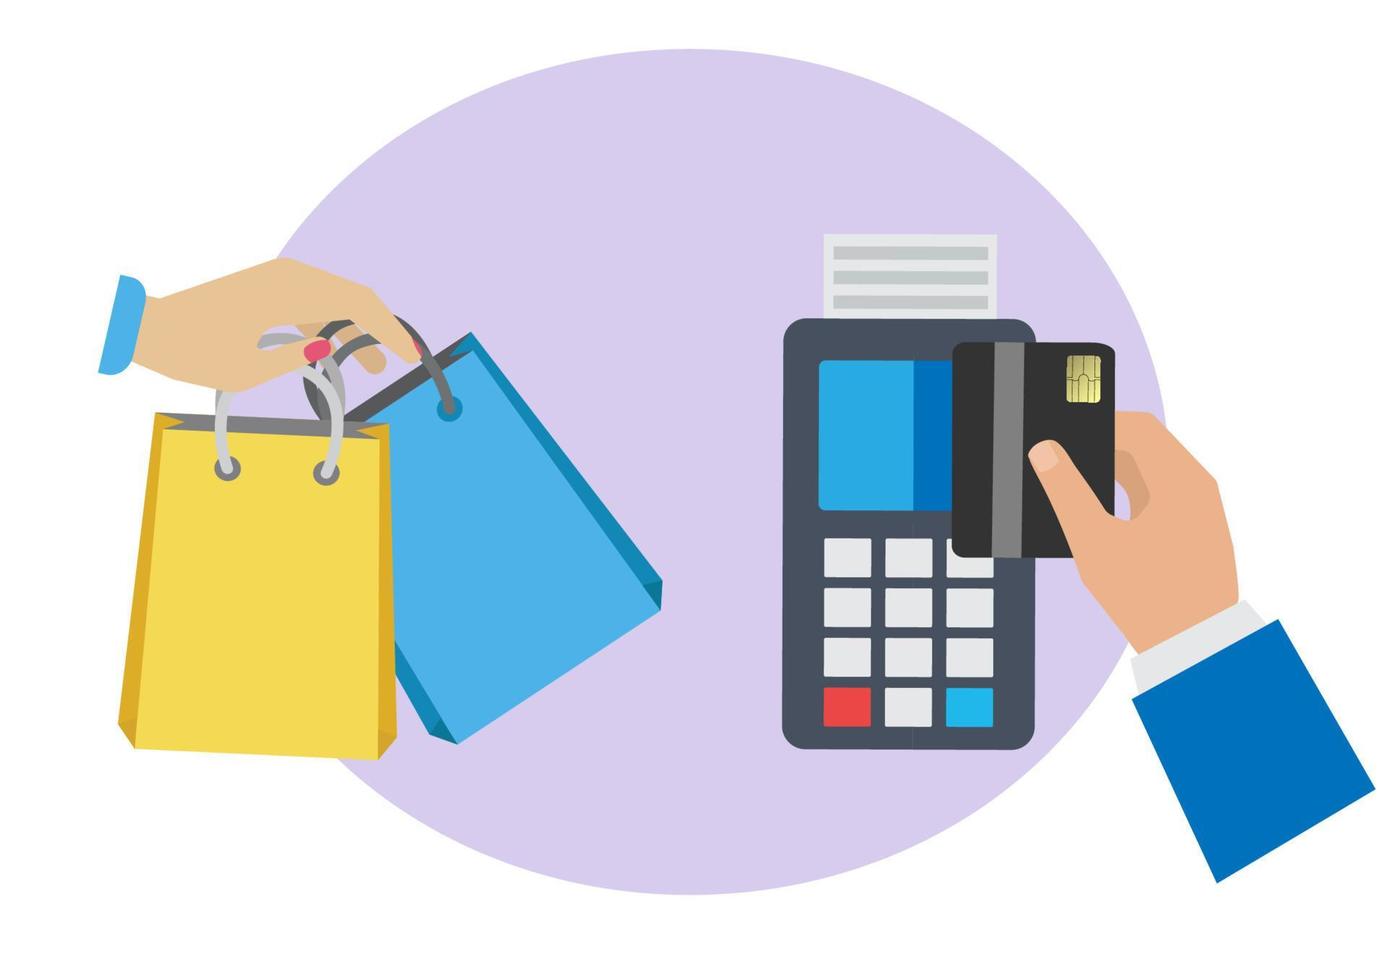 el cliente utiliza una tarjeta de crédito para pagar al comerciante. el concepto de tecnología sin efectivo y pagos con tarjeta de crédito. vector